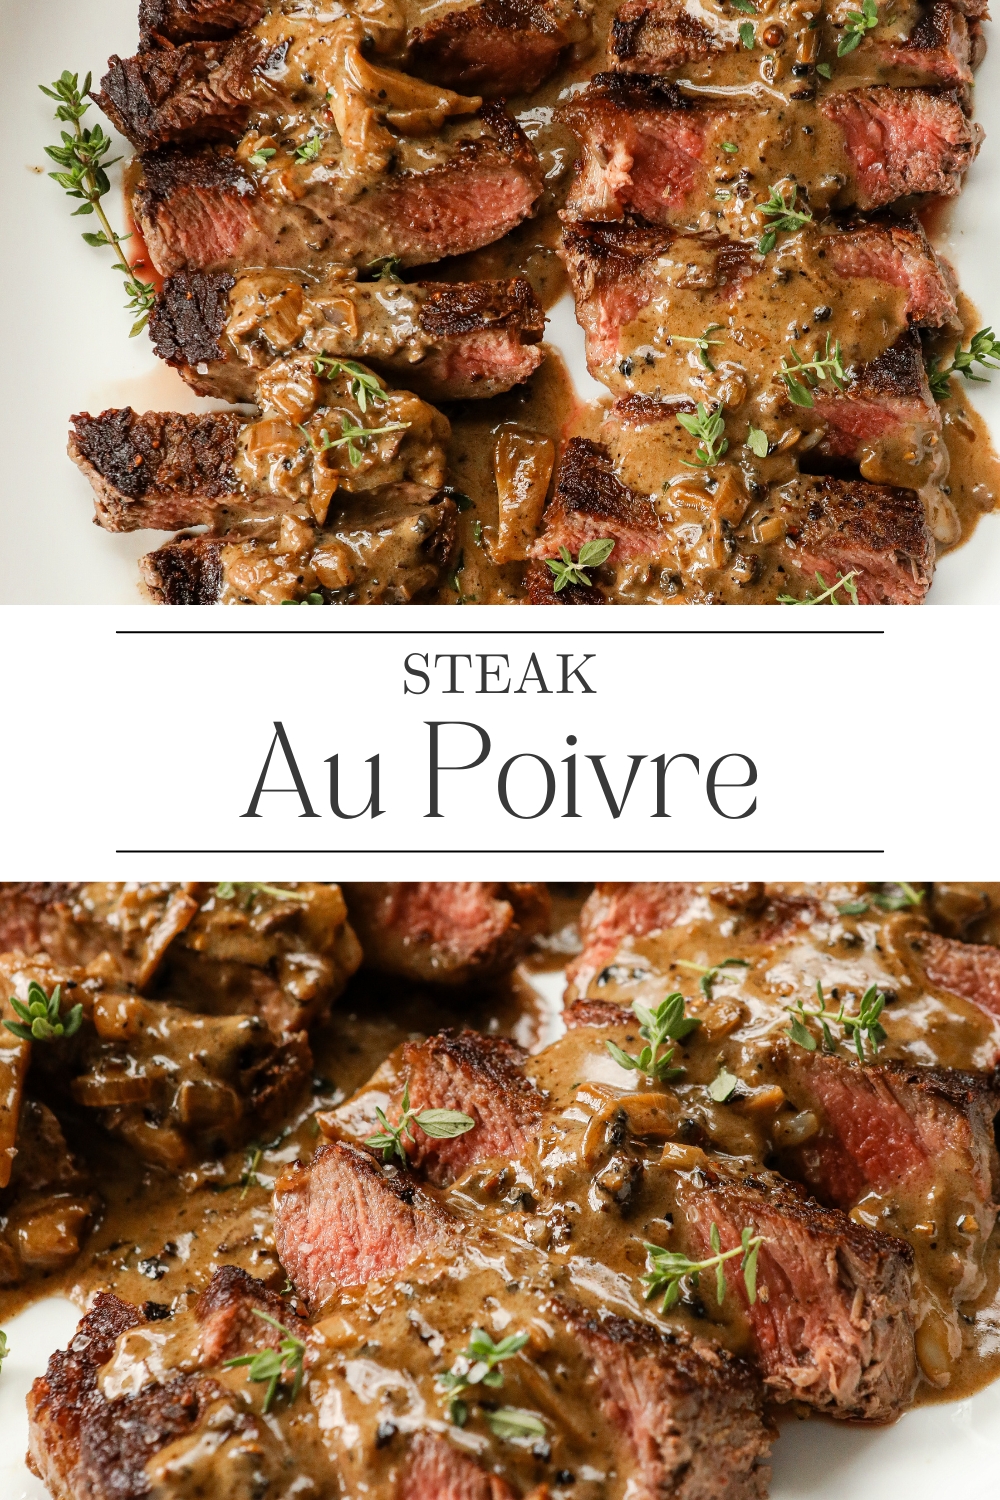 Classic Steak Au Poivre recipe